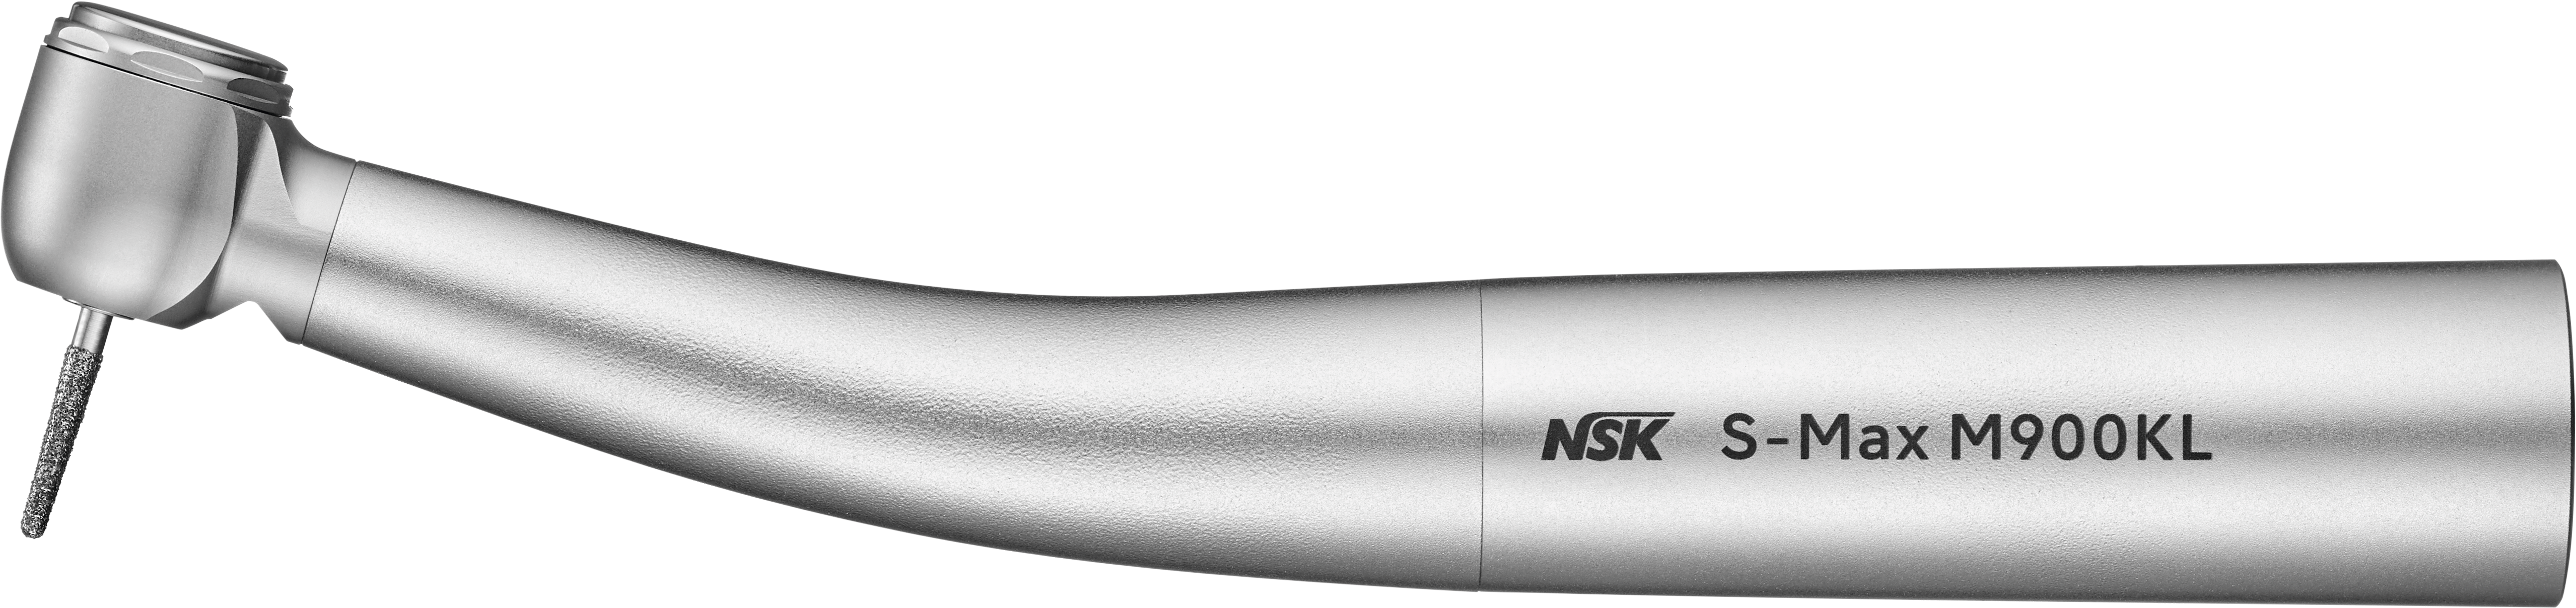 Turbina NSK S-Max M900KL -Att.Kavo